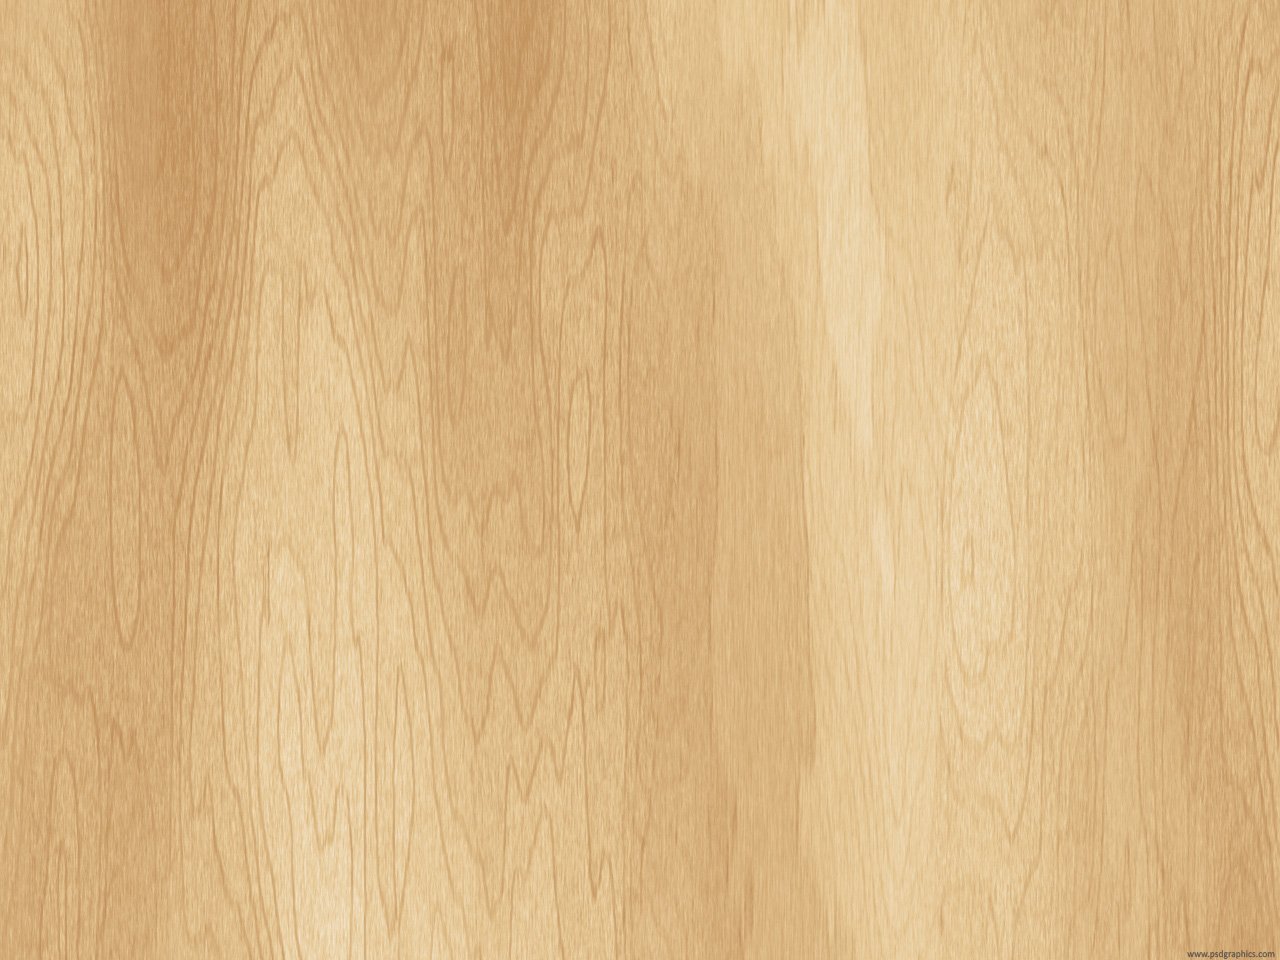 26 Best Wooden Background ideas | wooden background, background, wooden